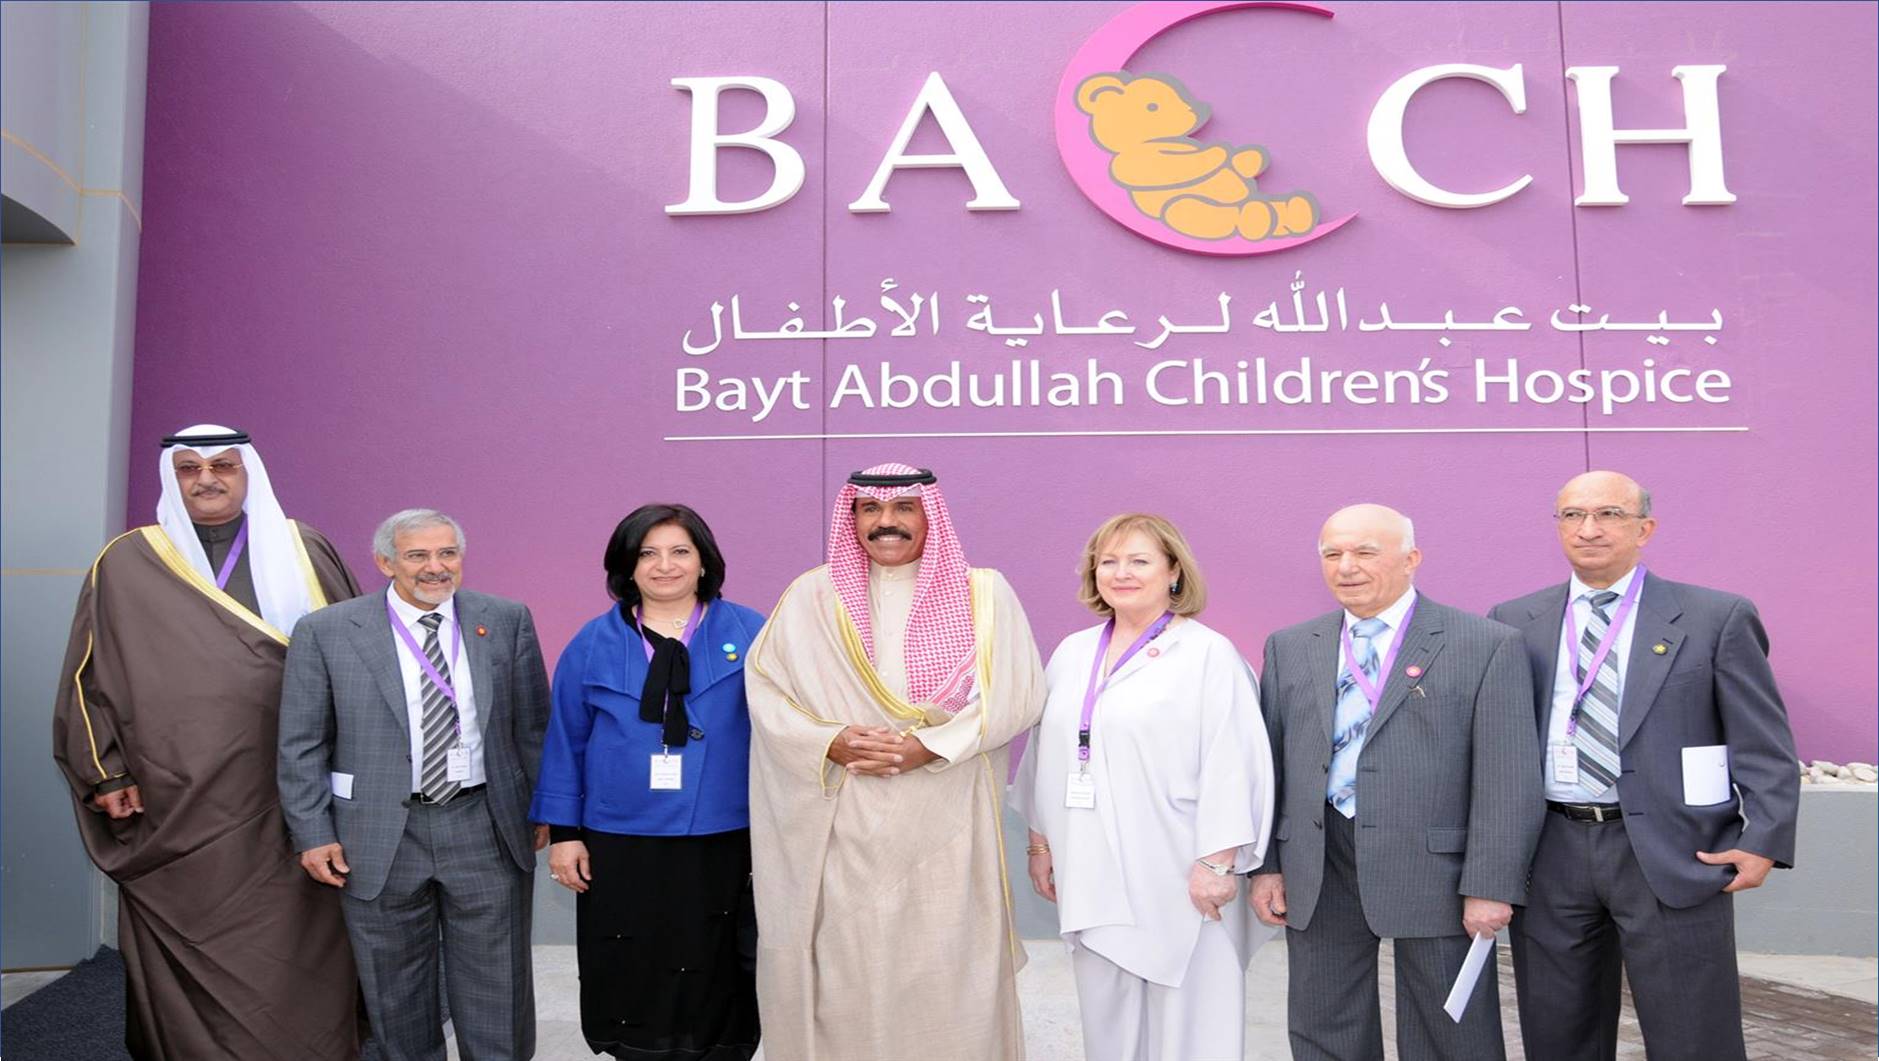 الجمعية الكويتية لرعاية الأطفال في بيت عبدالله لرعاية الأطفال يقدم وظائف